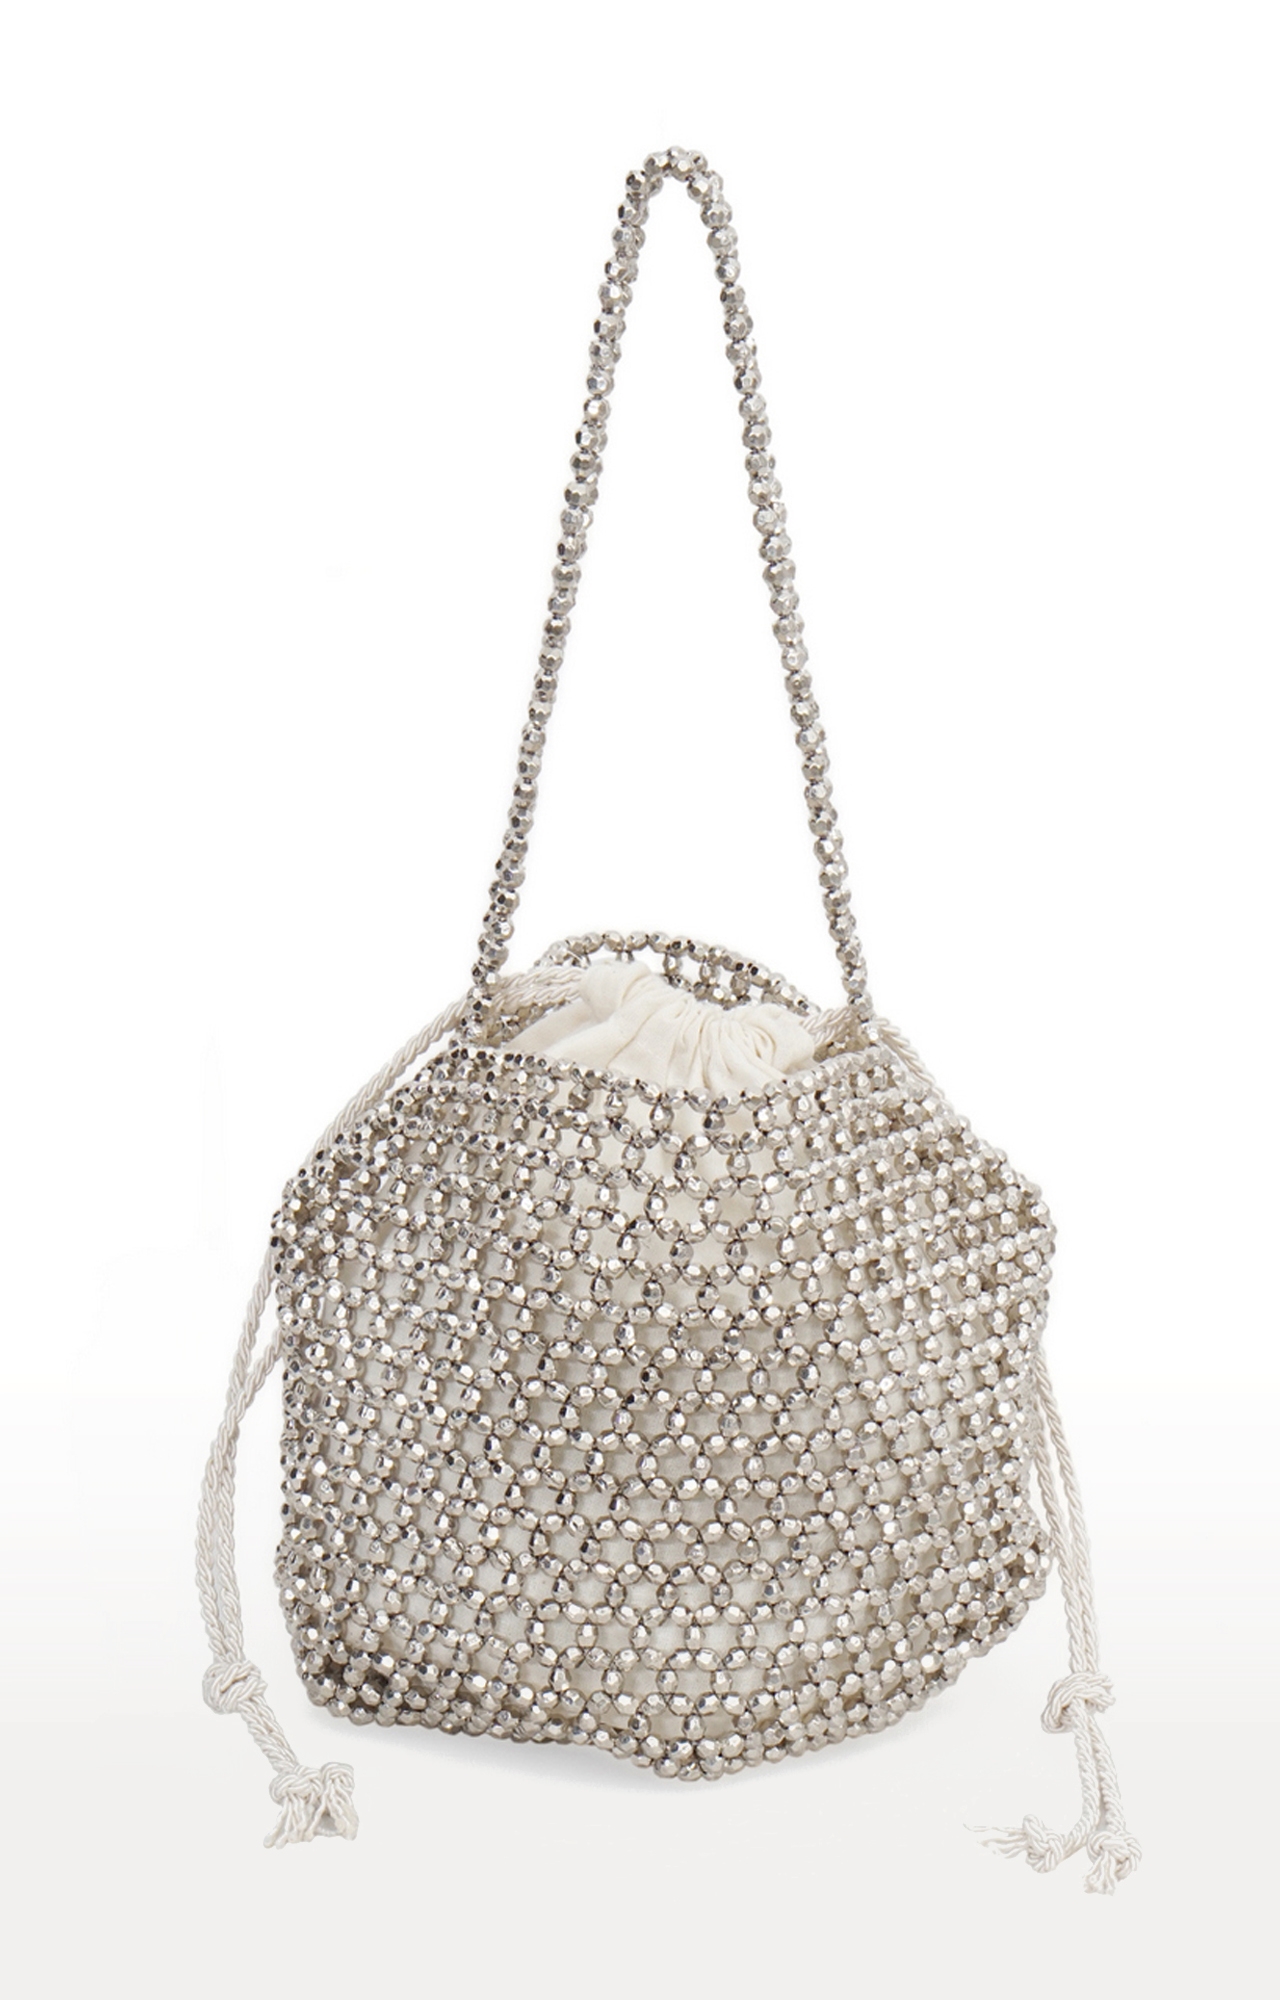 DIWAAH | Diwaah Silver Embellished Handbags